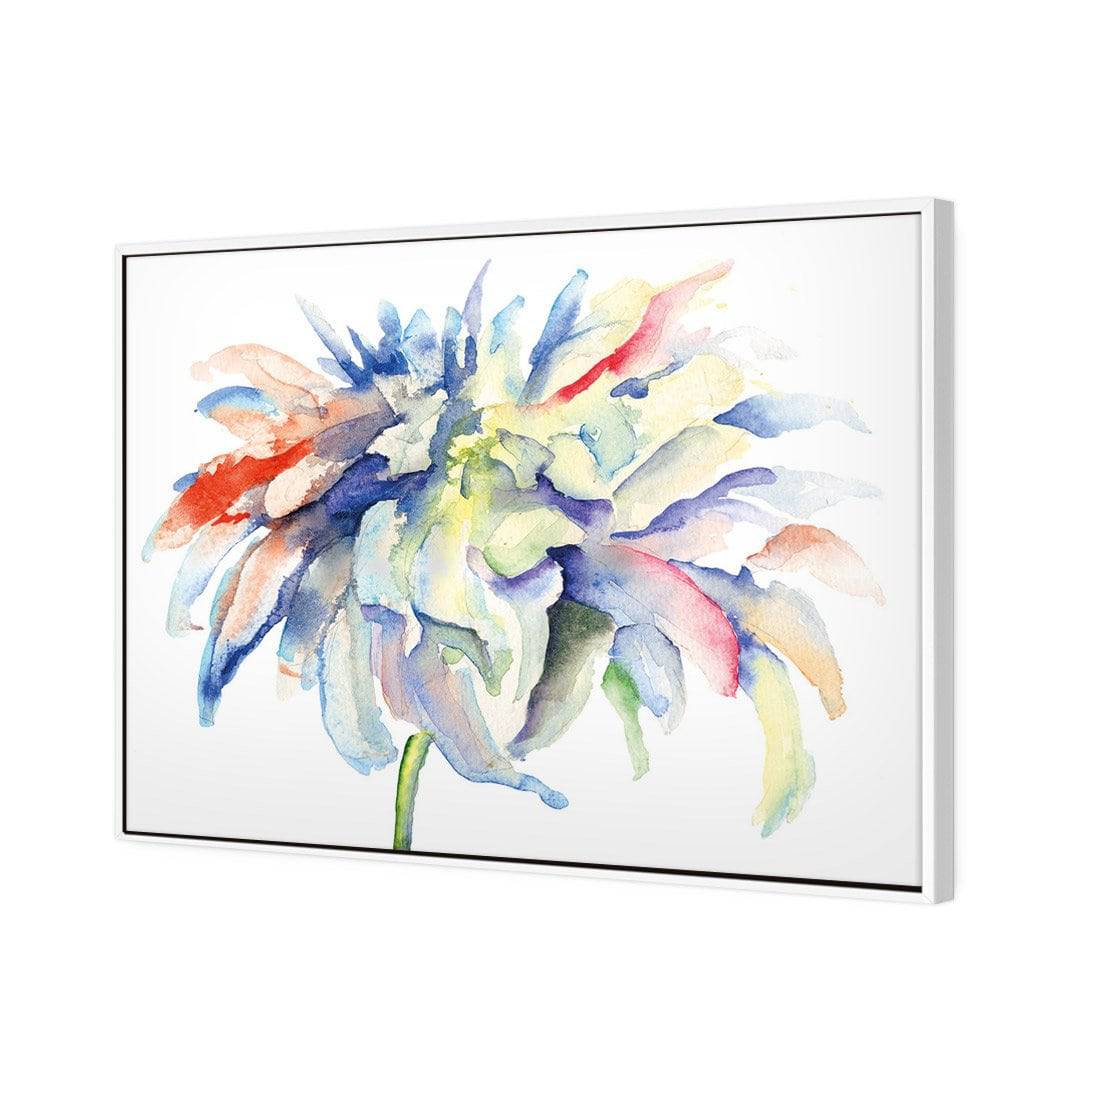 Fairy Floss Canvas Art-Canvas-Wall Art Designs-45x30cm-Rolled Canvas-Wall Art Designs